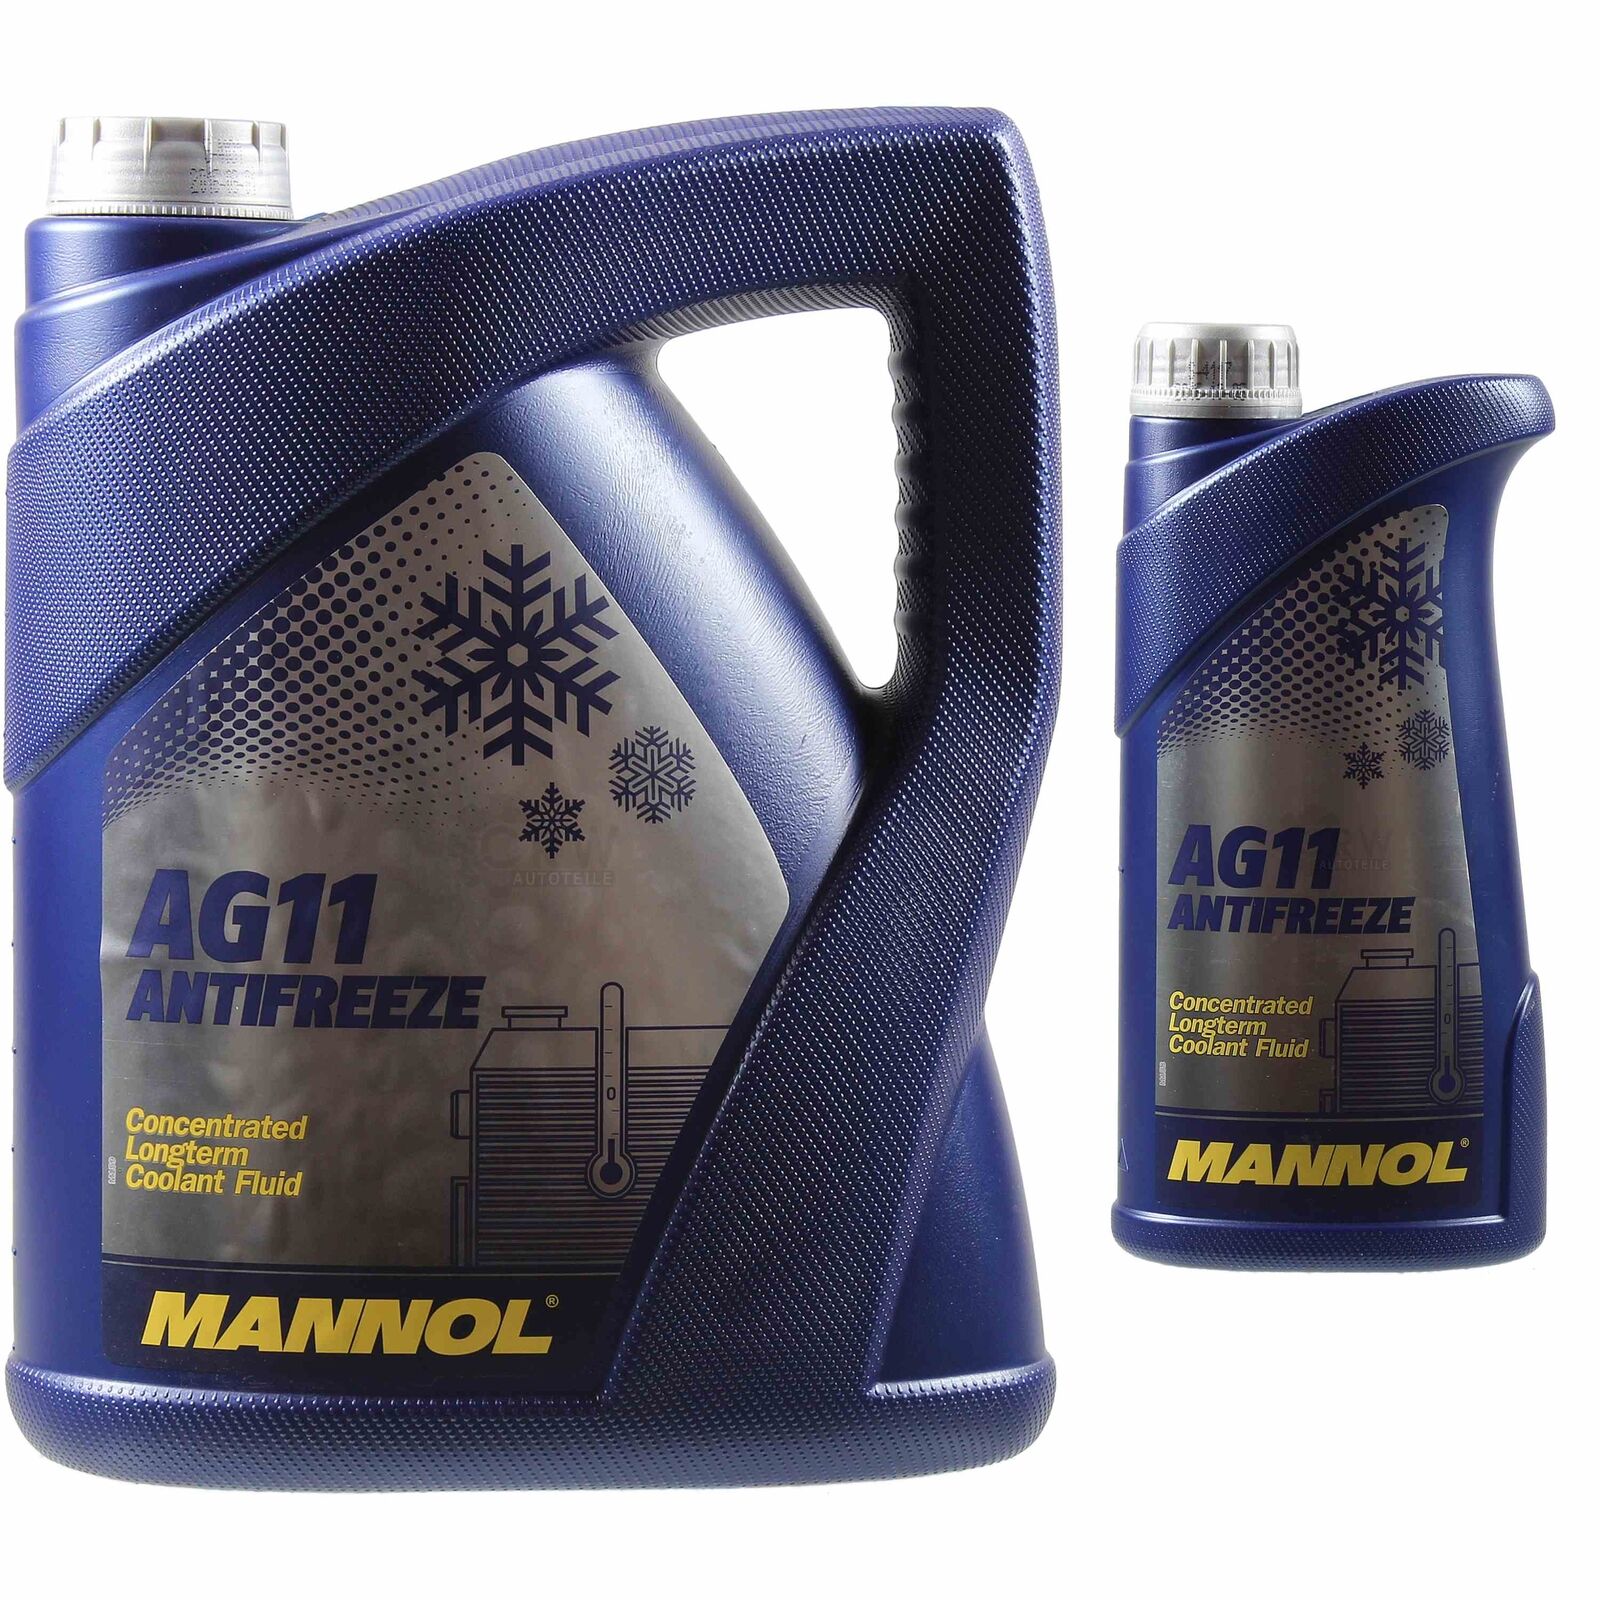 MANNOL Kühlerfrostschutz Antifreeze Typen G11 G12 G12 G13 G13 Frostschutz